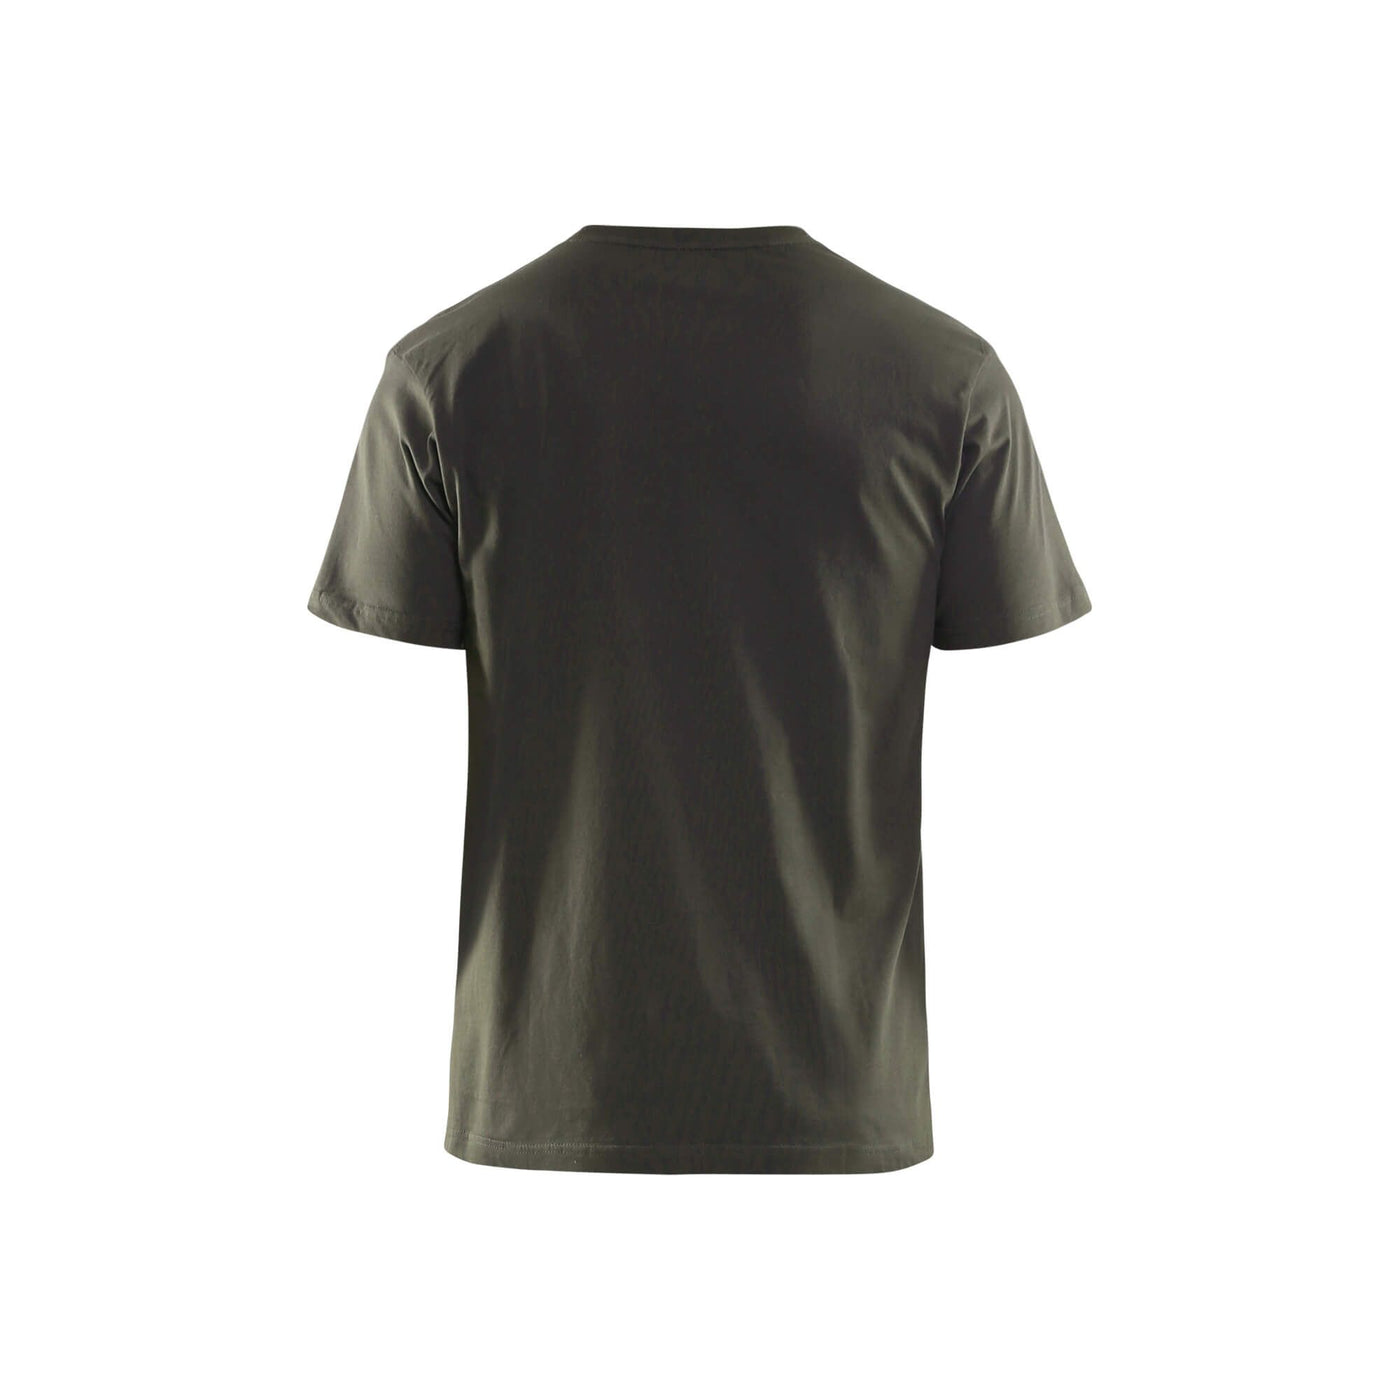 Blaklader 35251042 Work Cotton T-Shirt Dark Olive Green Rear #colour_dark-olive-green